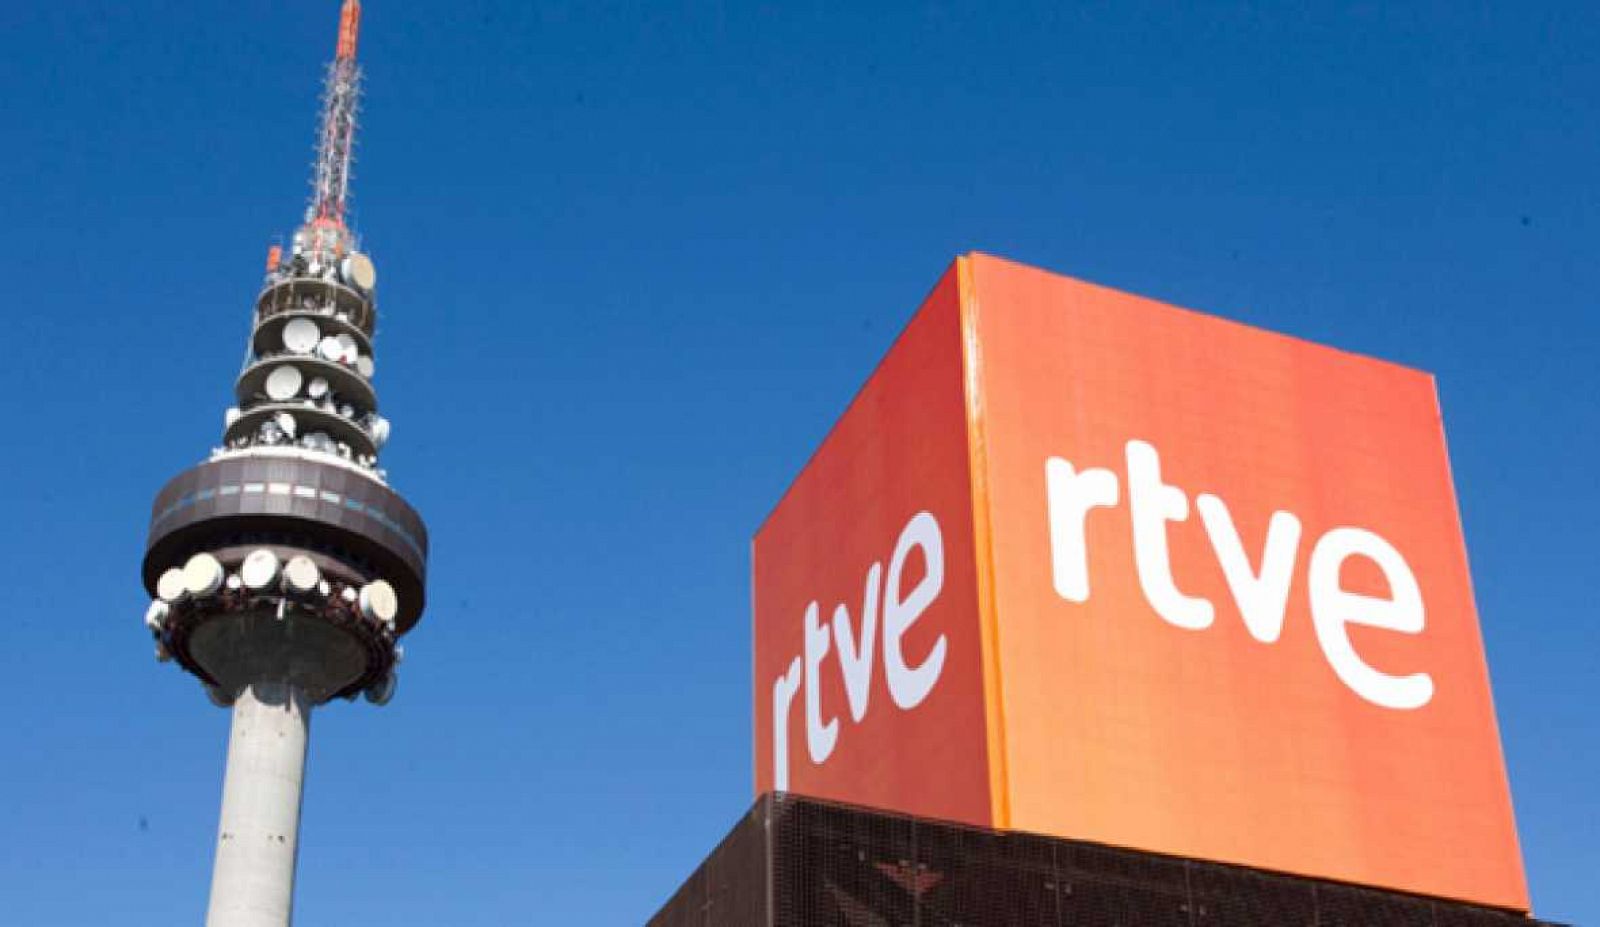 Imagen de archivo del logo de RTVE en las instalaciones de Torrespaña, con el Pirulí al fondo.